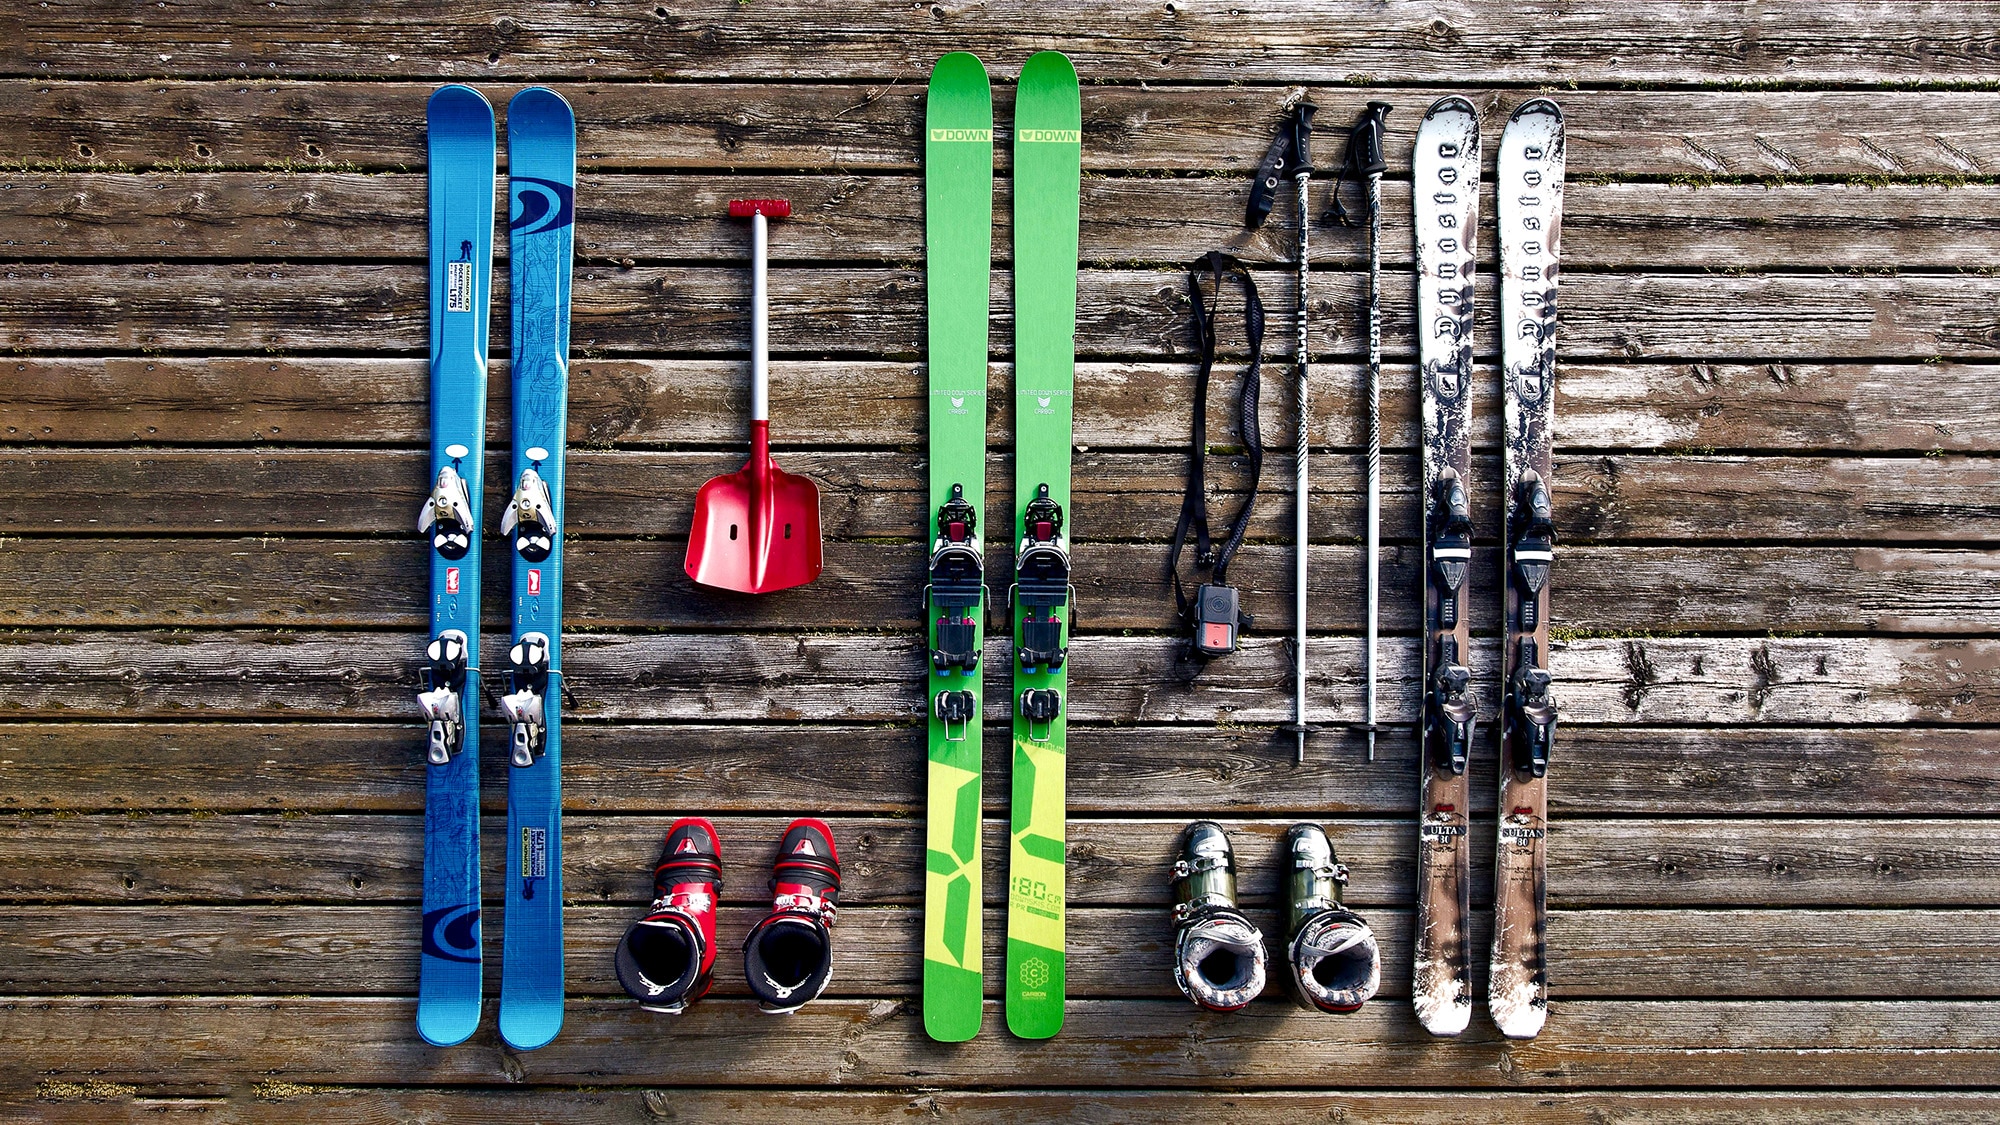 Ski Hire in Arinsal, El Tarter, La Massana, Pas de la Casa, Soldeu & More!